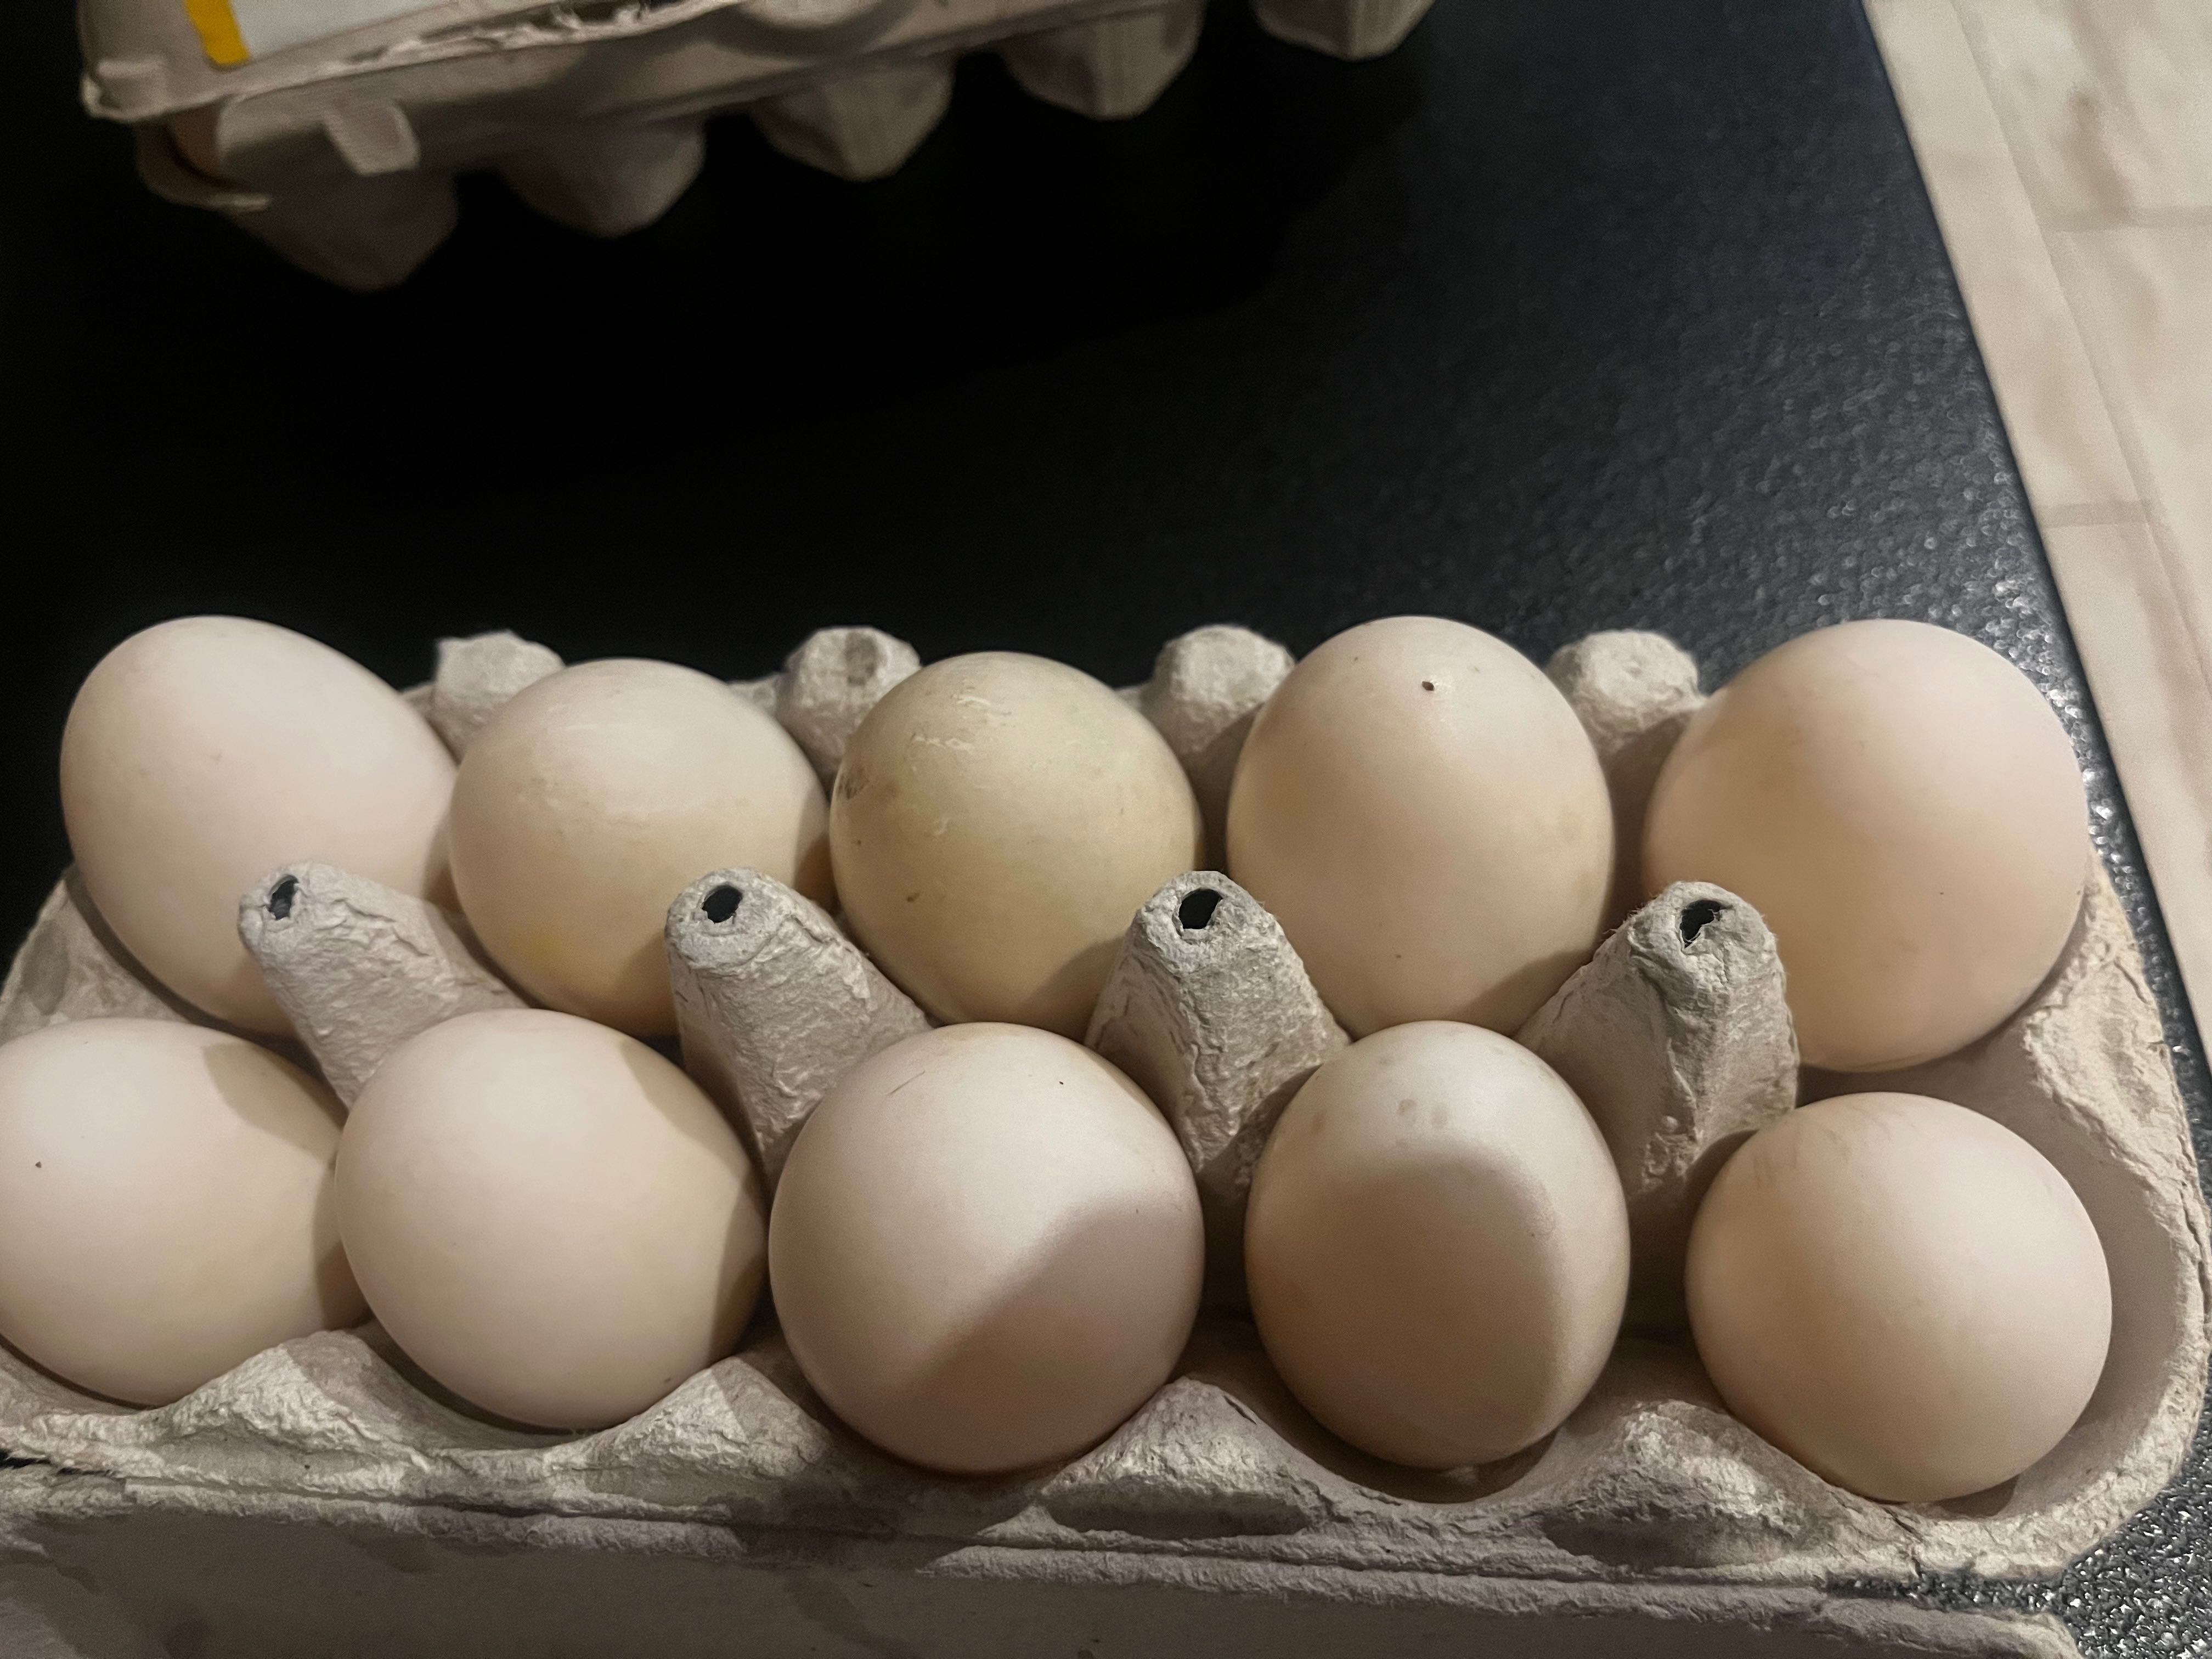 Jajka lęgowe kaczki staropolskiej